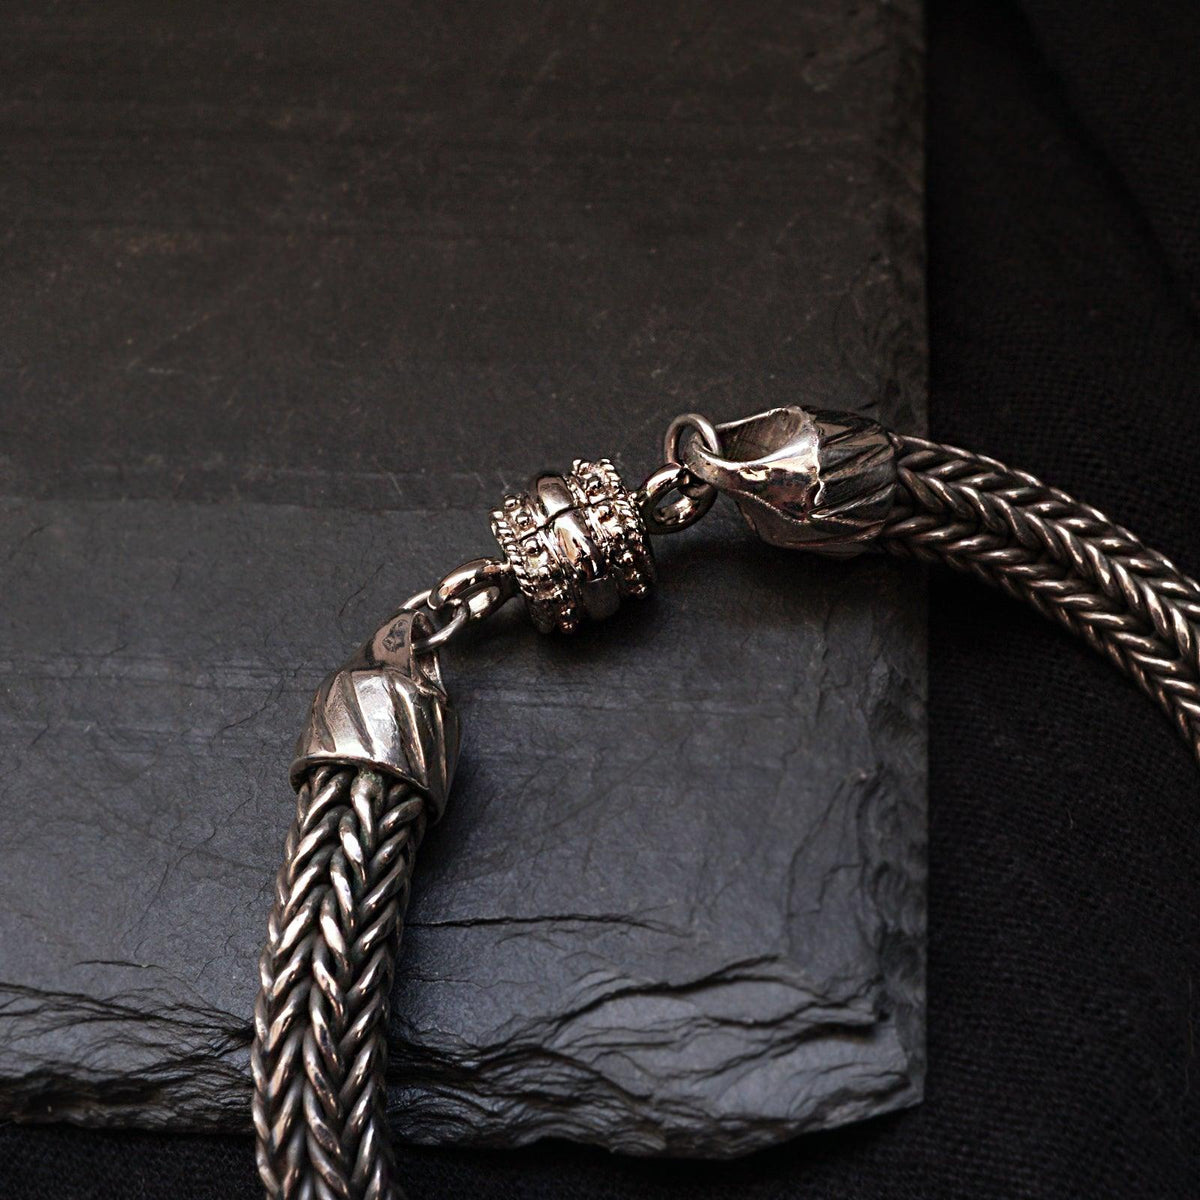 Woven Chain Bracelet in Silver, 8mm